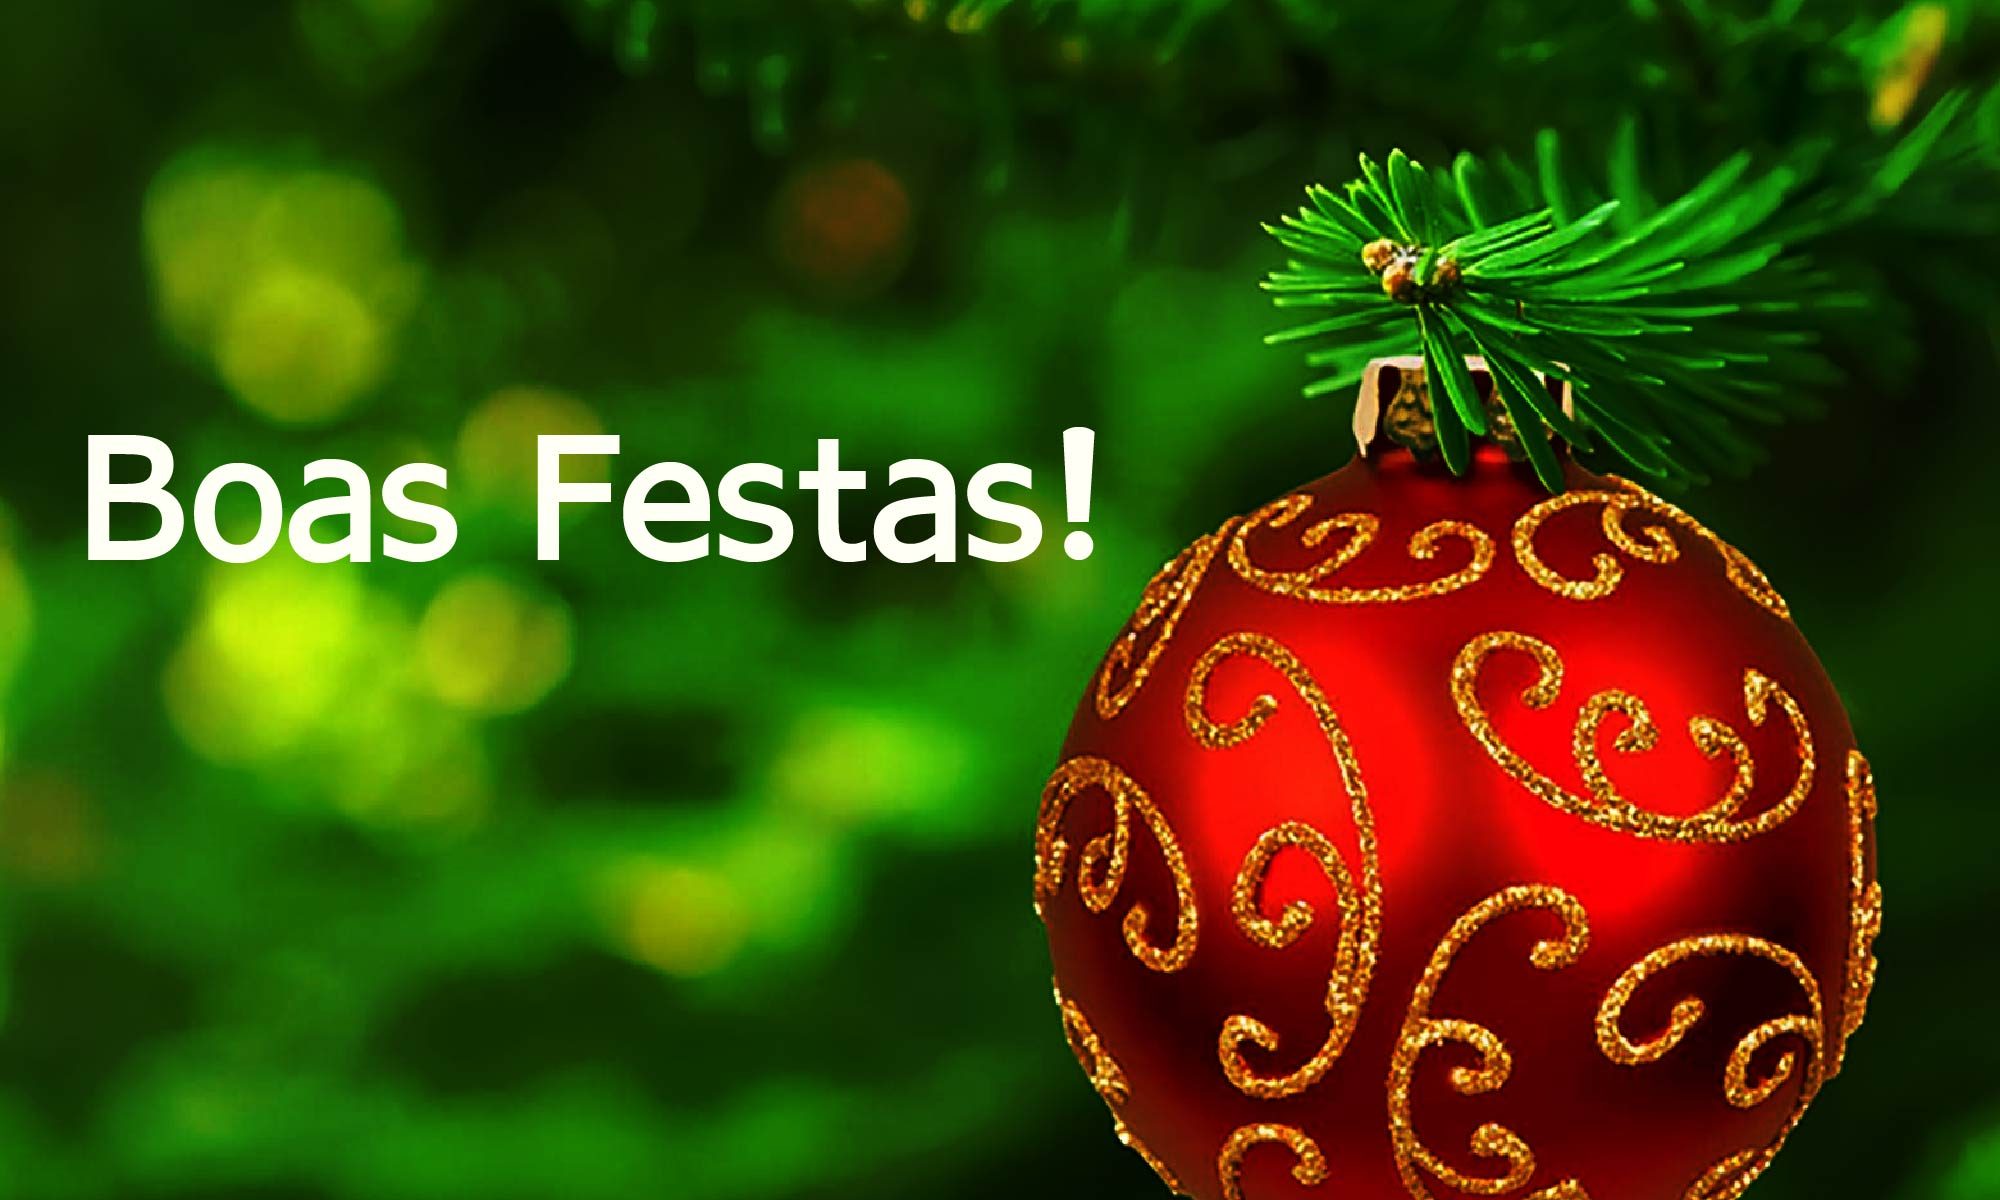 imagem em tom verde com uma grande bola vermelha de Natal. Está escrito "Boas Festas" e há a logo da Retina Brasil.